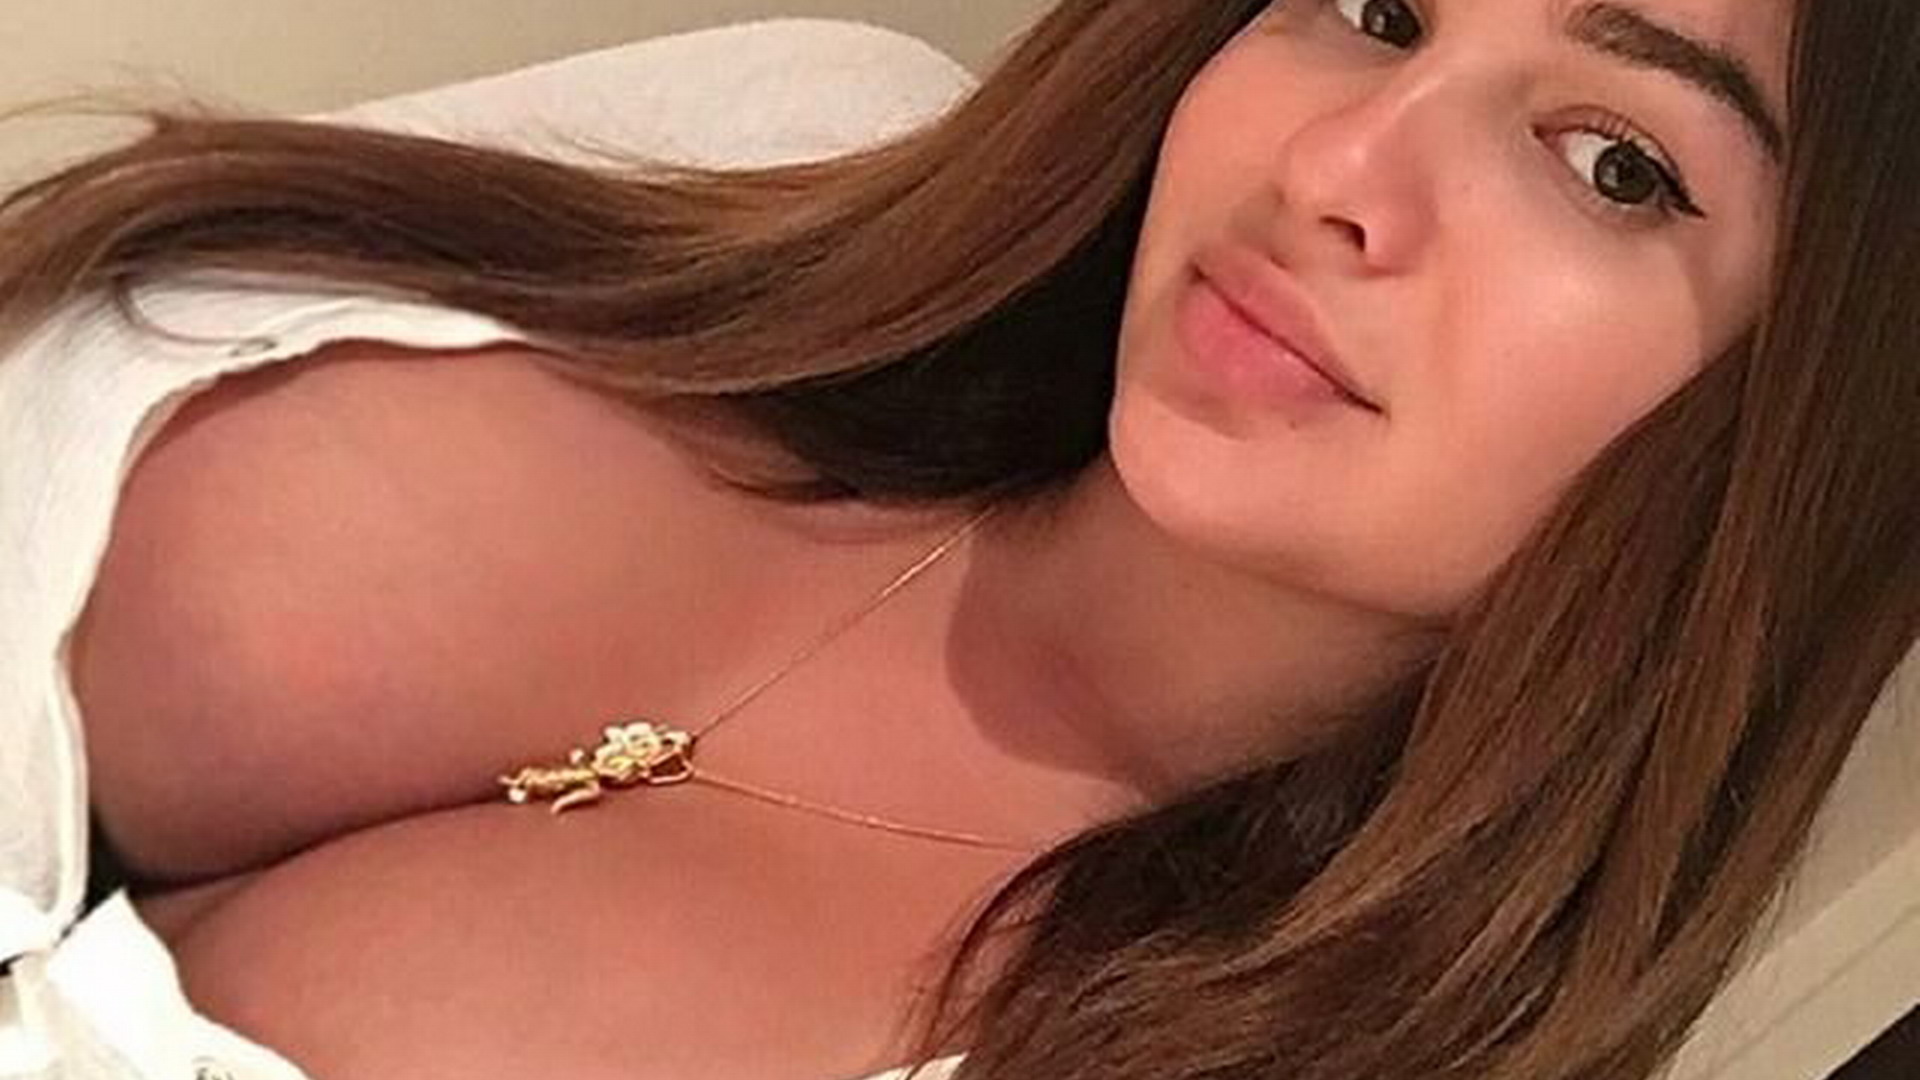 Украинская модель Mila показала шикарную грудь